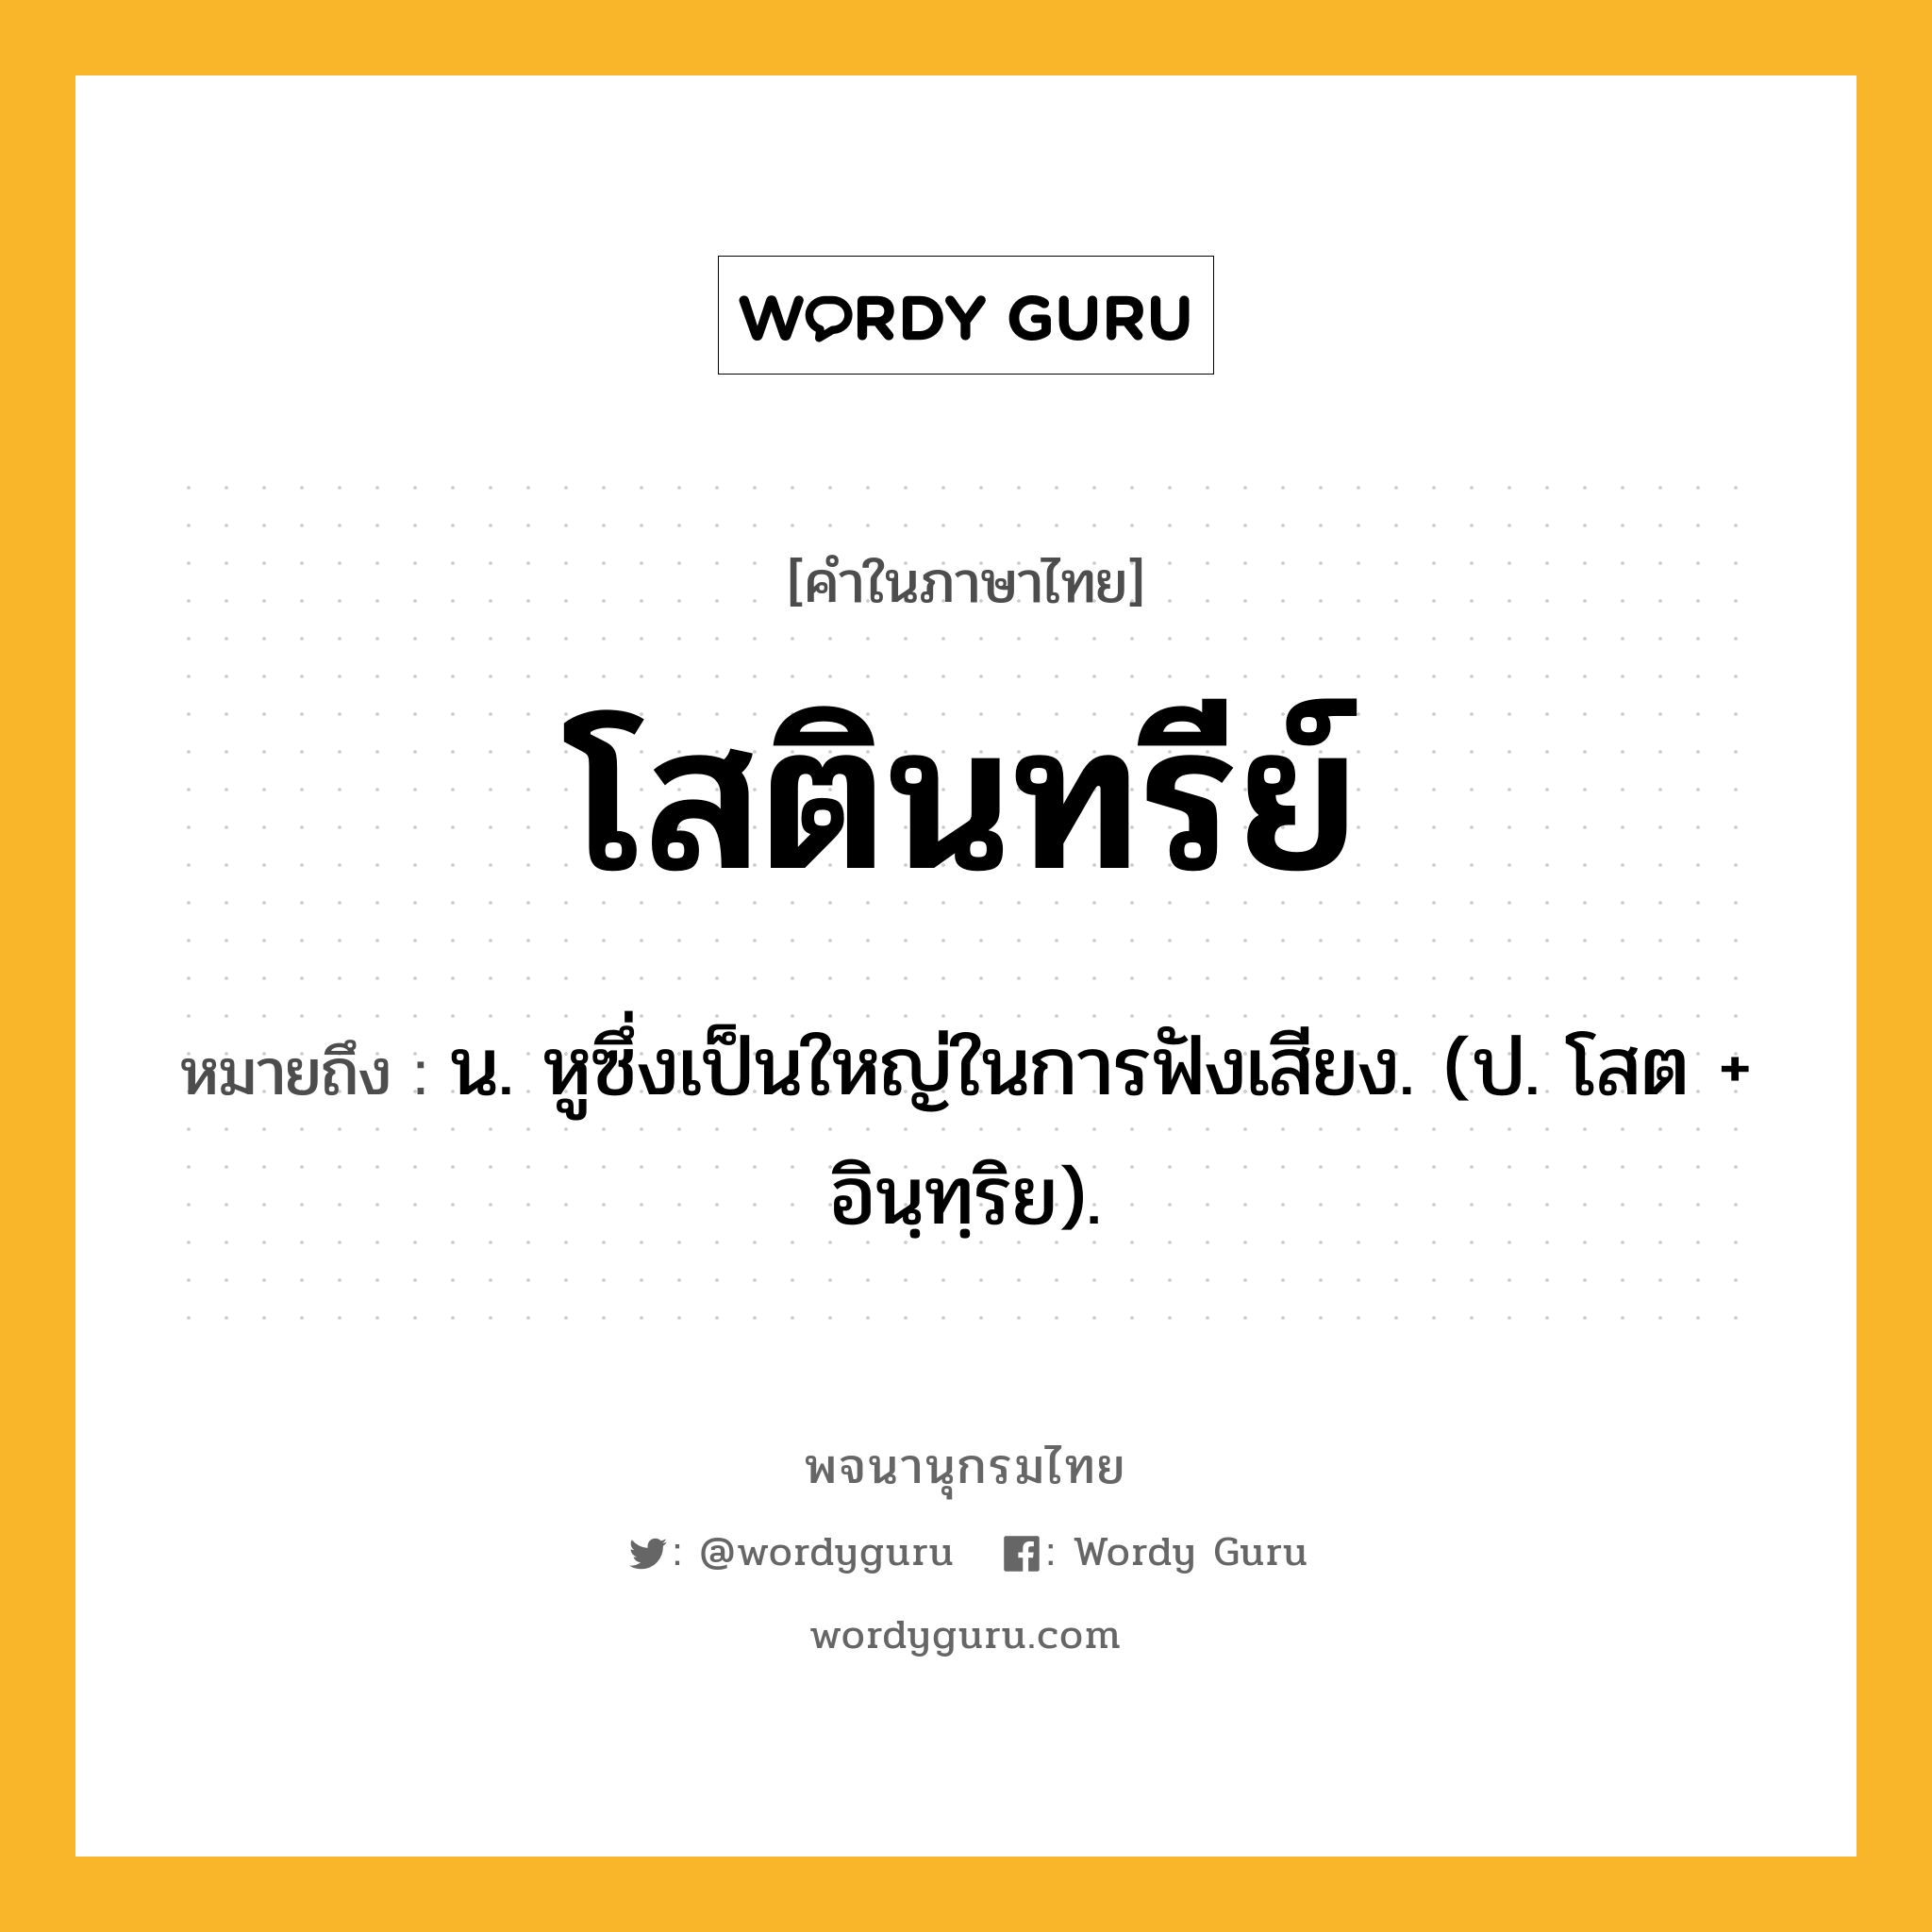 โสตินทรีย์ ความหมาย หมายถึงอะไร?, คำในภาษาไทย โสตินทรีย์ หมายถึง น. หูซึ่งเป็นใหญ่ในการฟังเสียง. (ป. โสต + อินฺทฺริย).